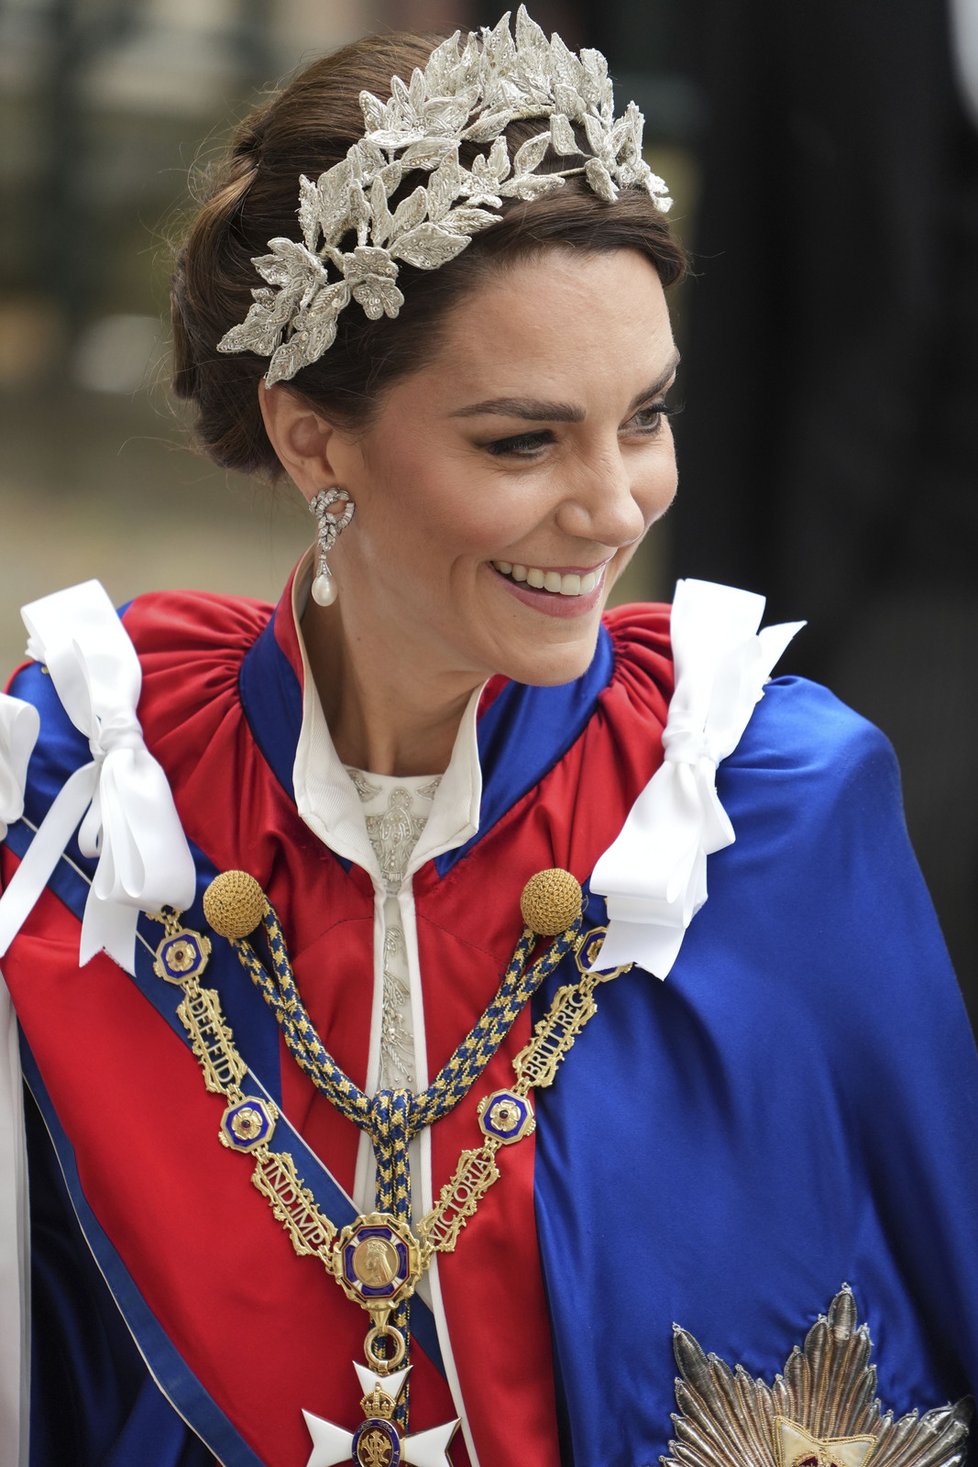 Kate zvolila róbu z dílny Alexandera McQueena. Šperky uctila Dianu i královnu Alžbětu. Čelenkou, kterou měla stejnou s dcerou Charlotte, však porušila tradici.